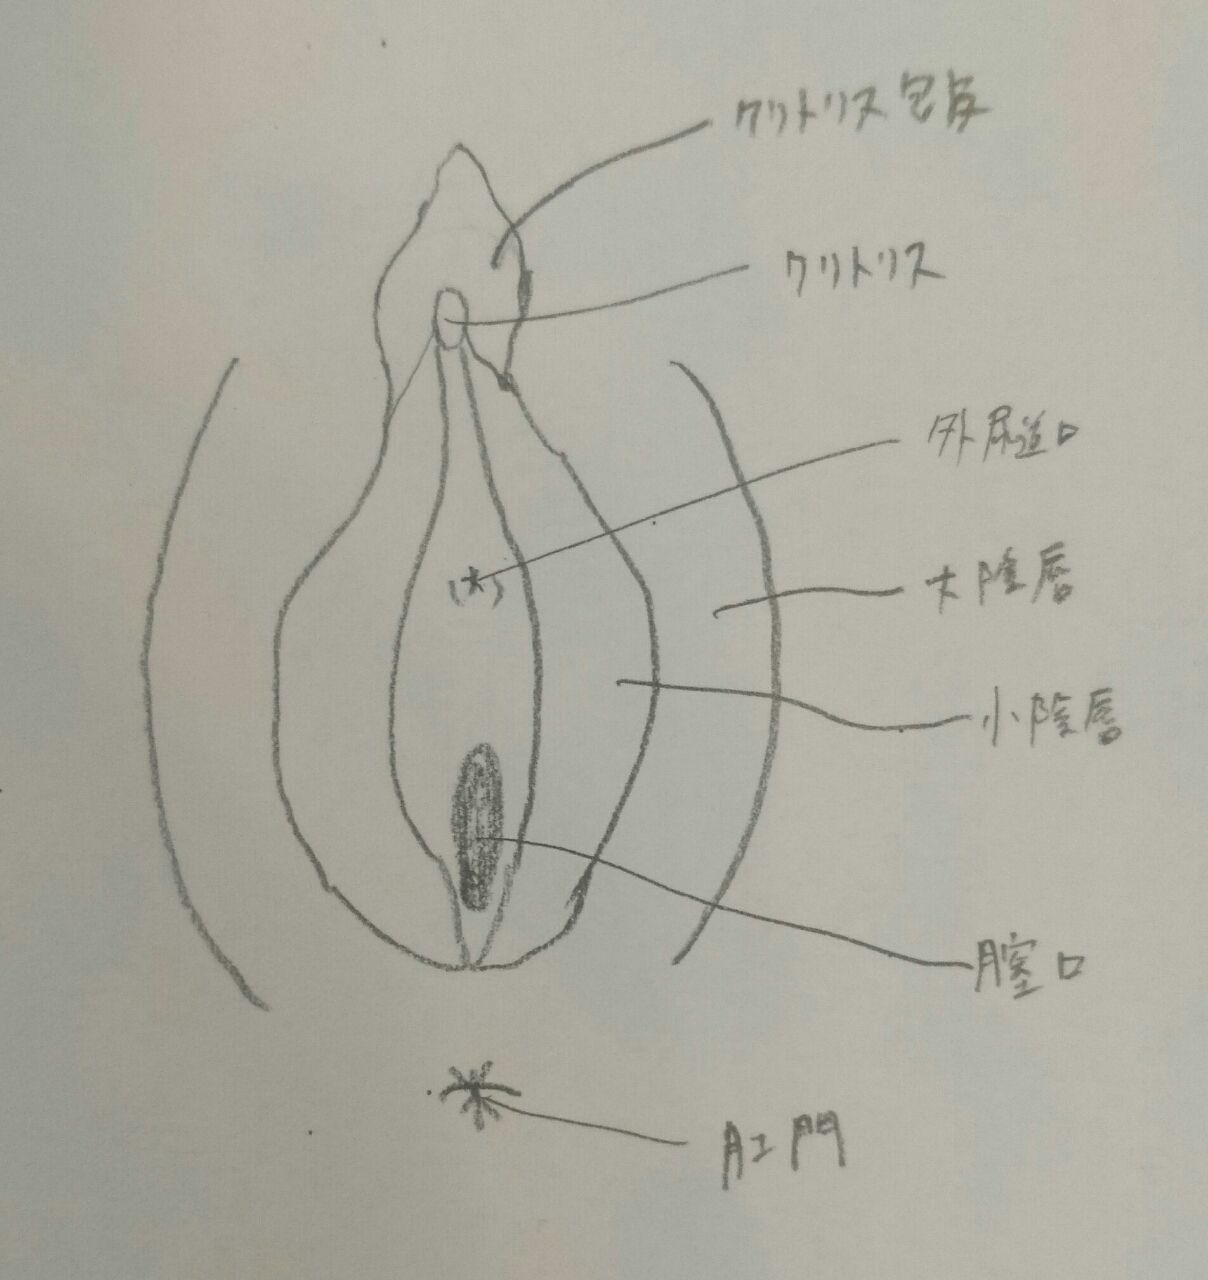 高須クリニック高須幹弥の美容整形症例画像写真集 小陰唇縮小手術の術式について(高須幹弥の場合)。